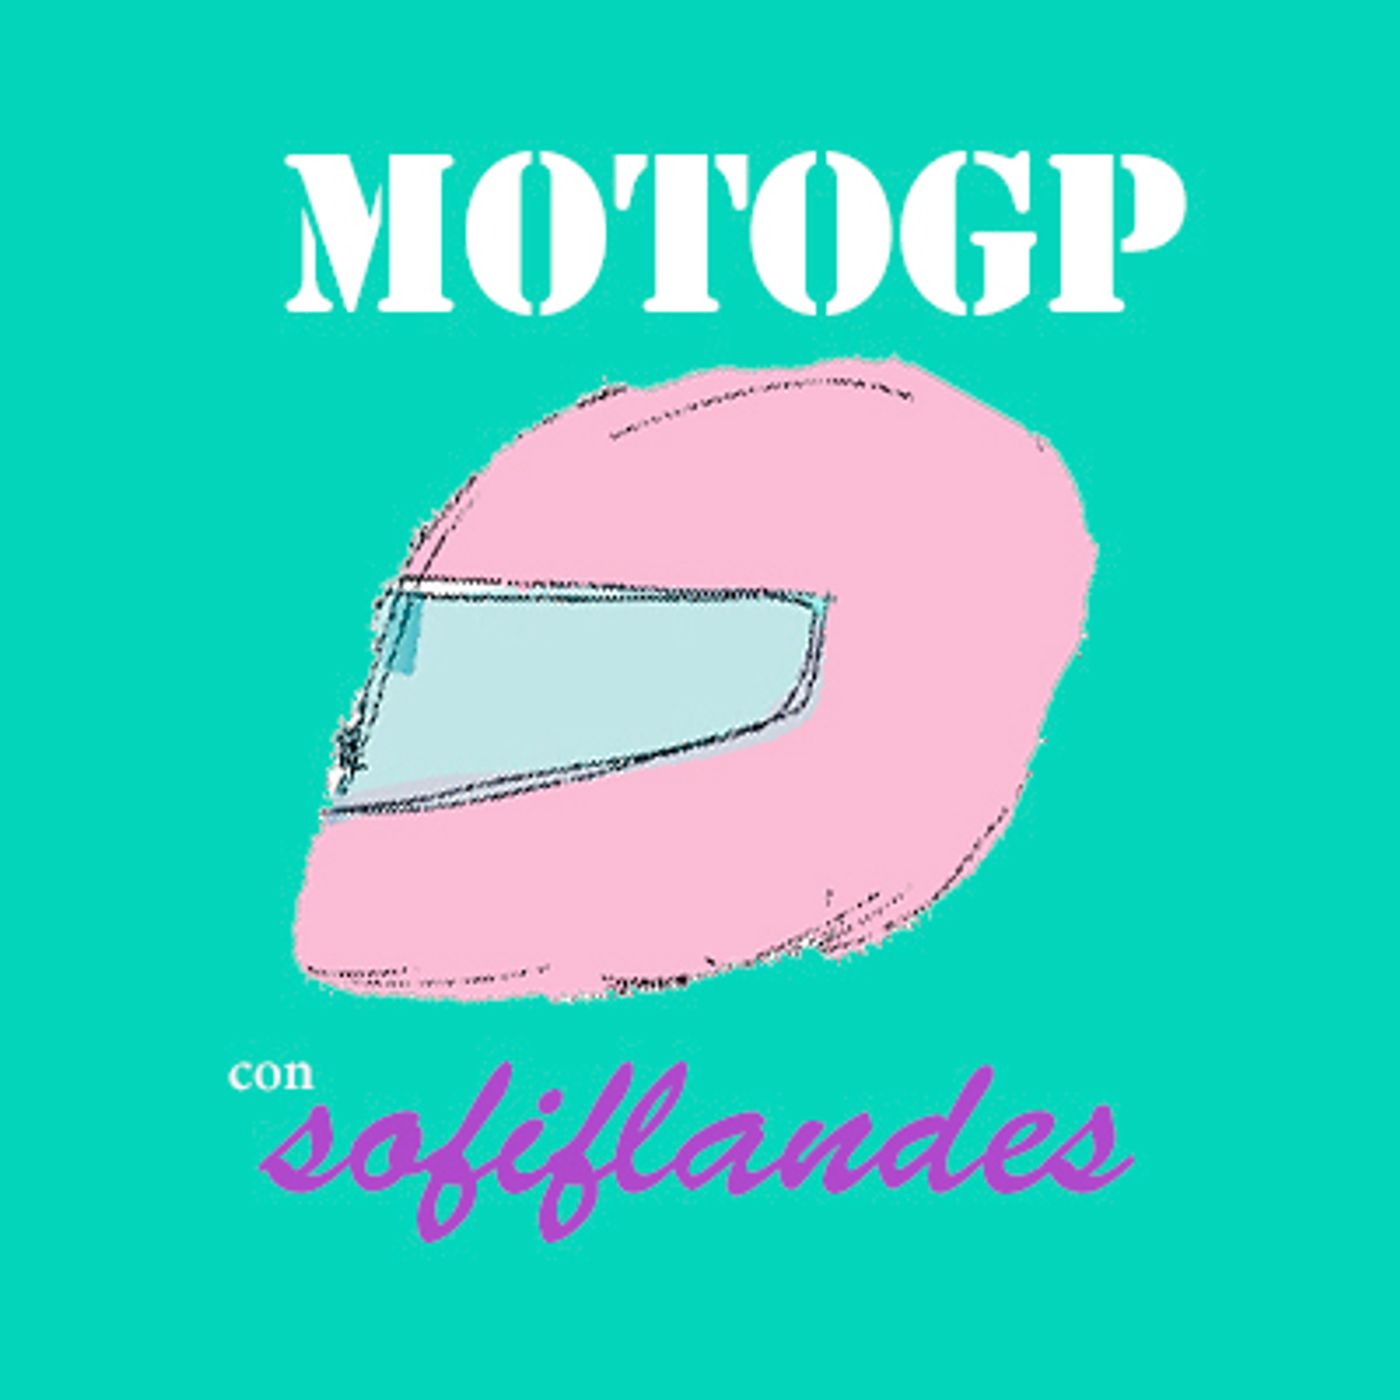 El show de MotoGp con Sofi Flandes